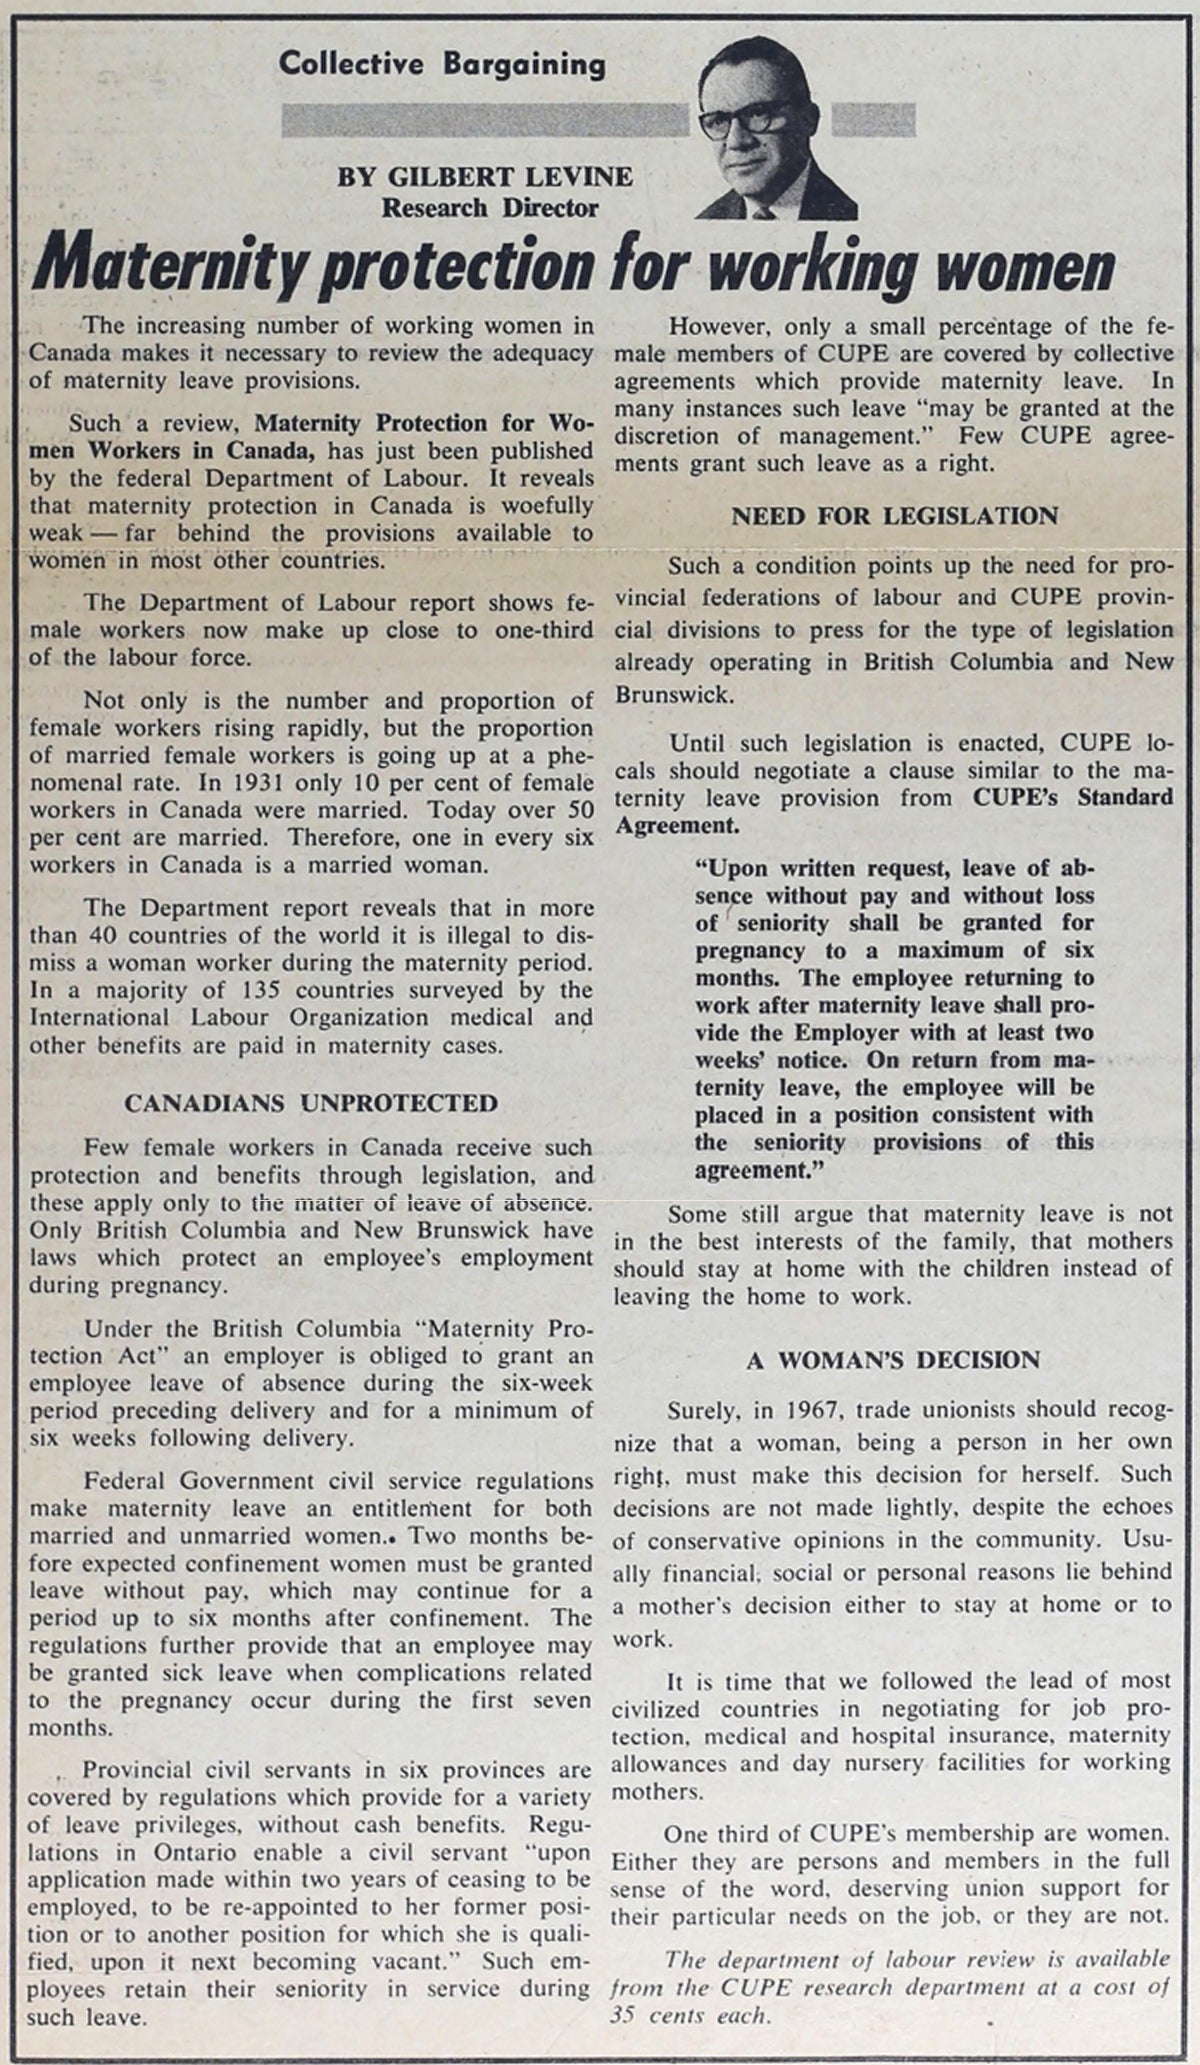 Article du SCFP de 1967